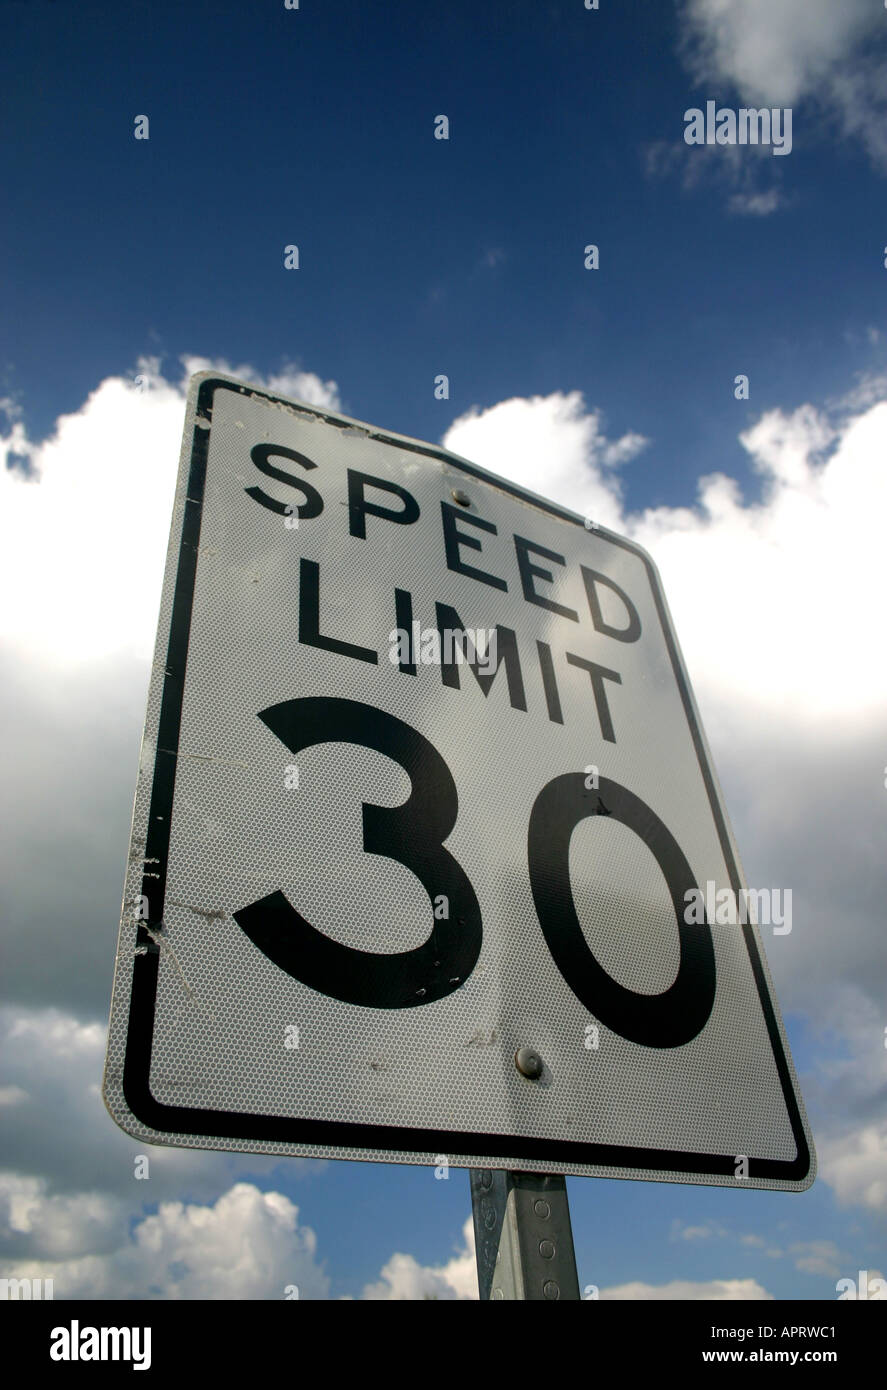 La limite de vitesse de 30 mph avertissement Clearwater Beach Floride États-Unis d'Amérique Banque D'Images